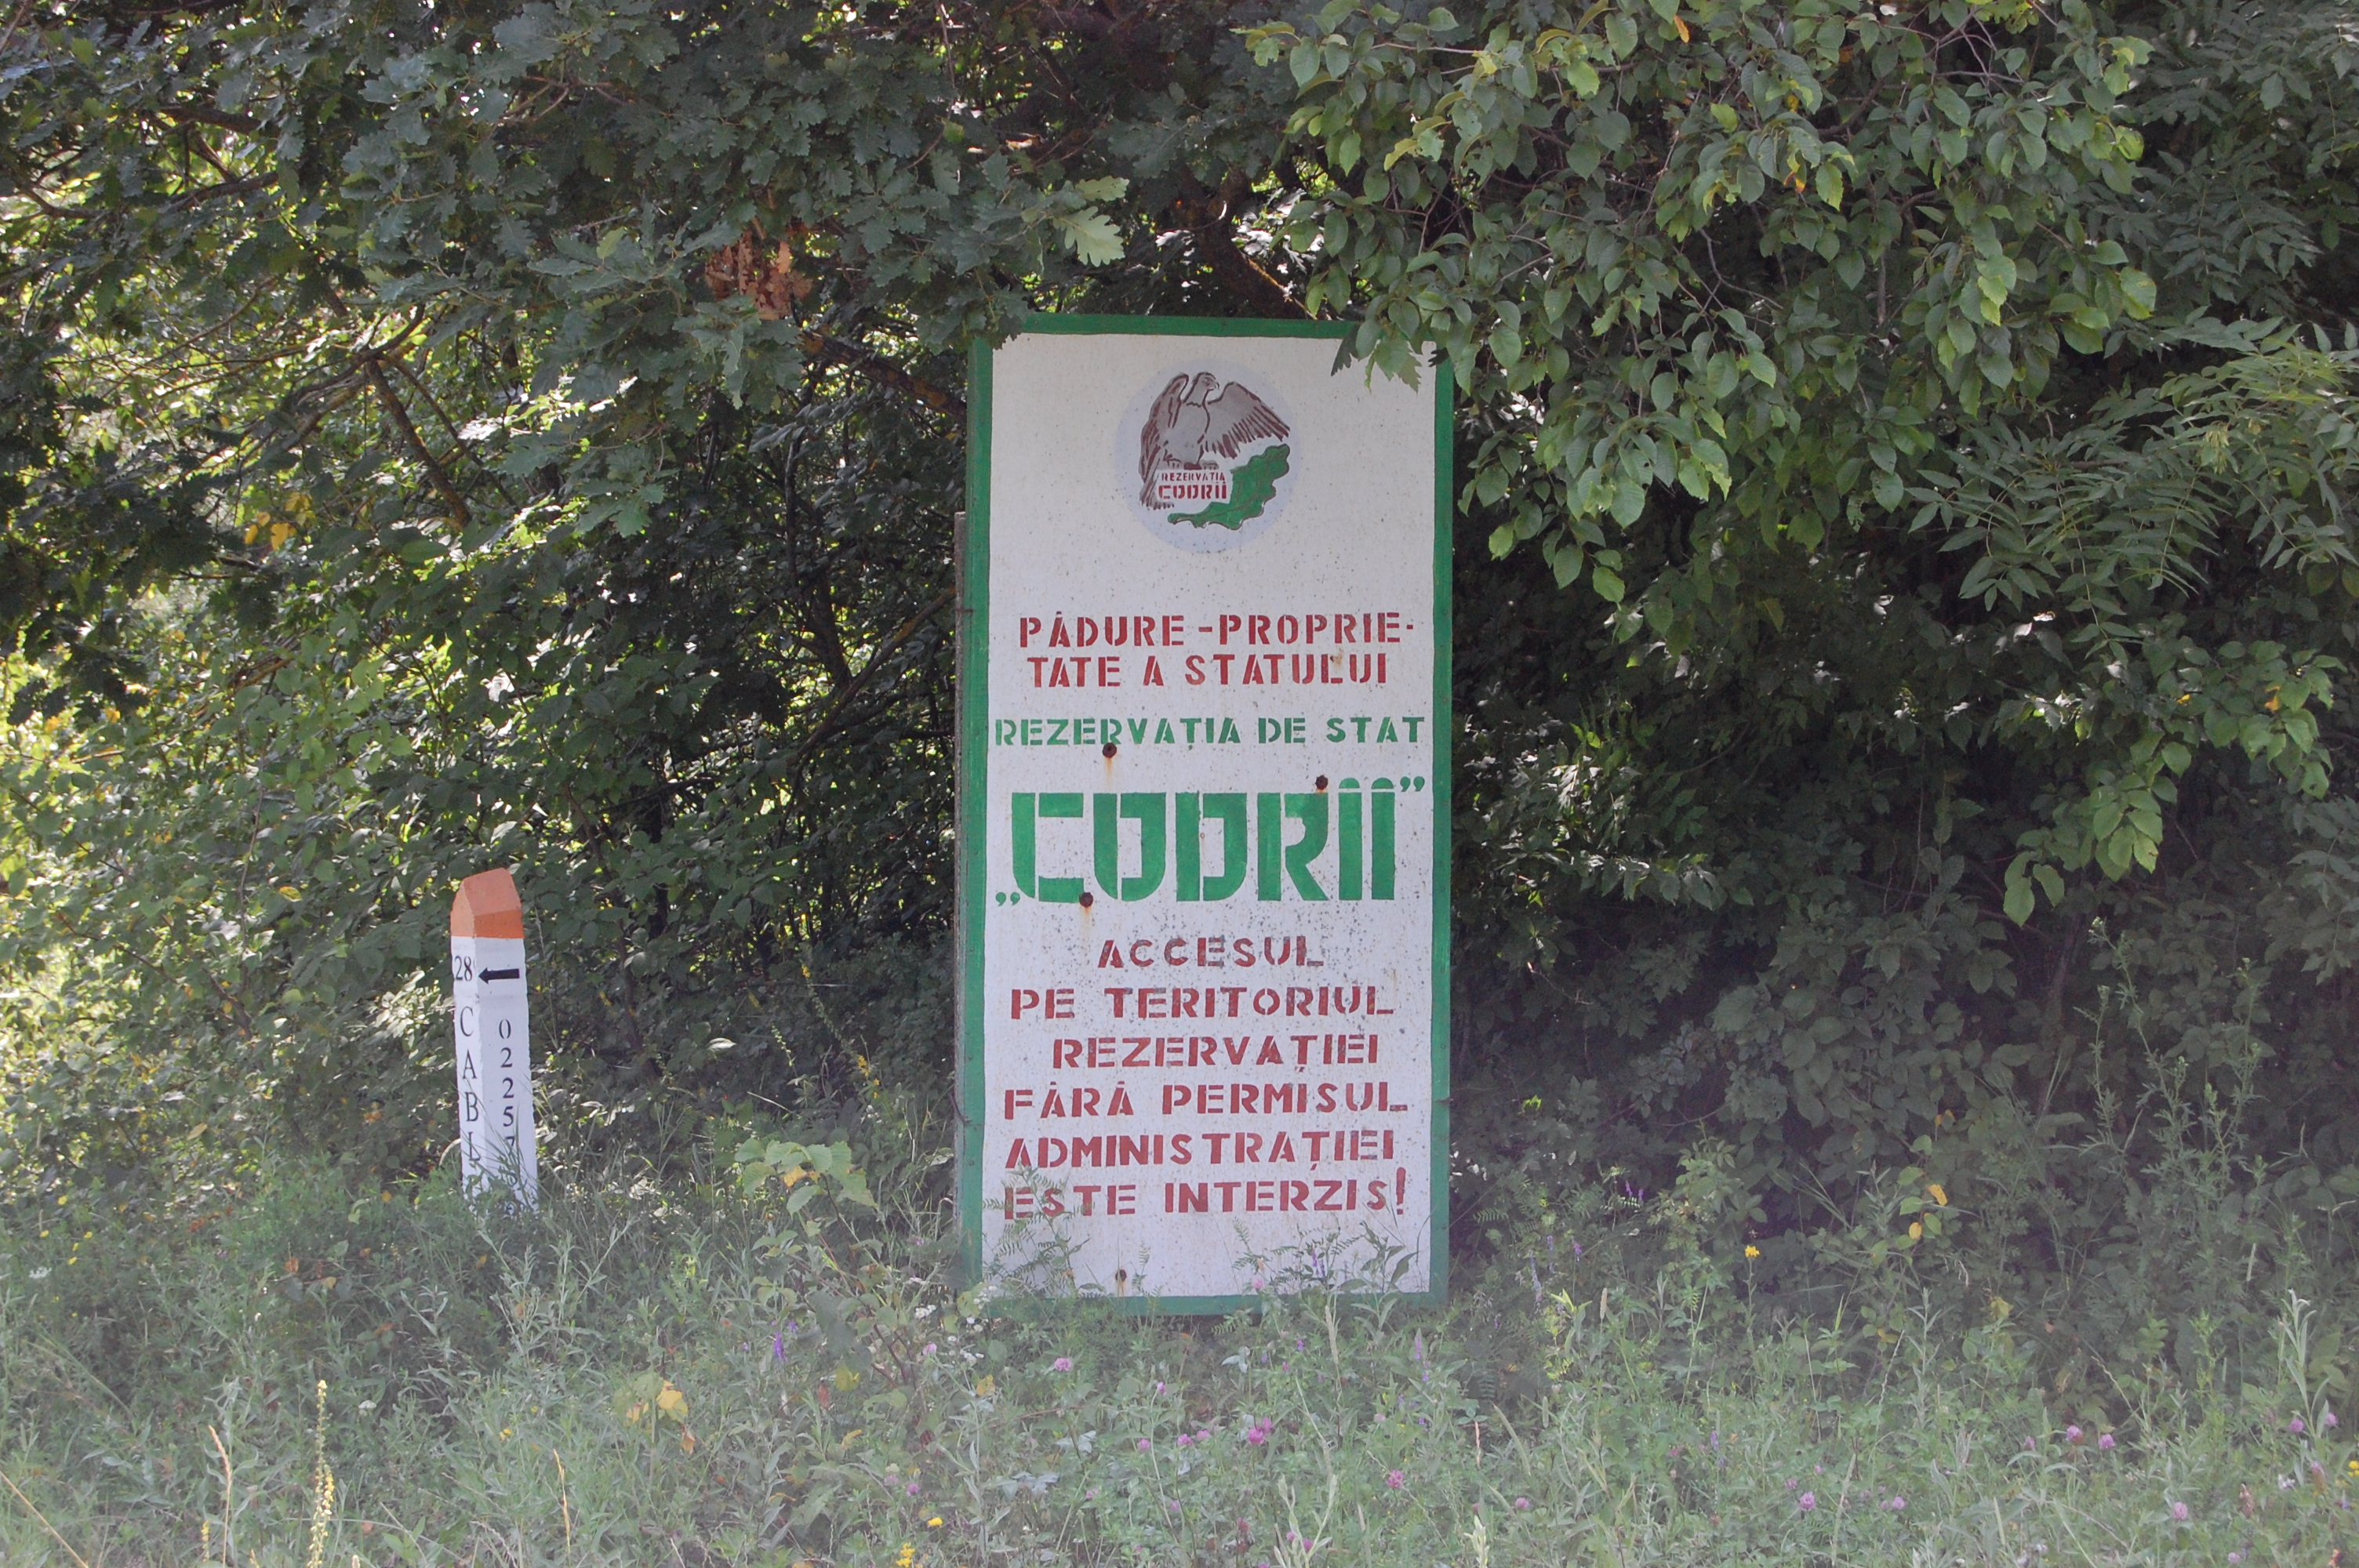 MD, District Straseni, Satul Lozova, Padure proprietatea statului, Rezervatia de stat Codrii, Accesul pe teritoriul rezervatiei fara permisul administratiei este interzis